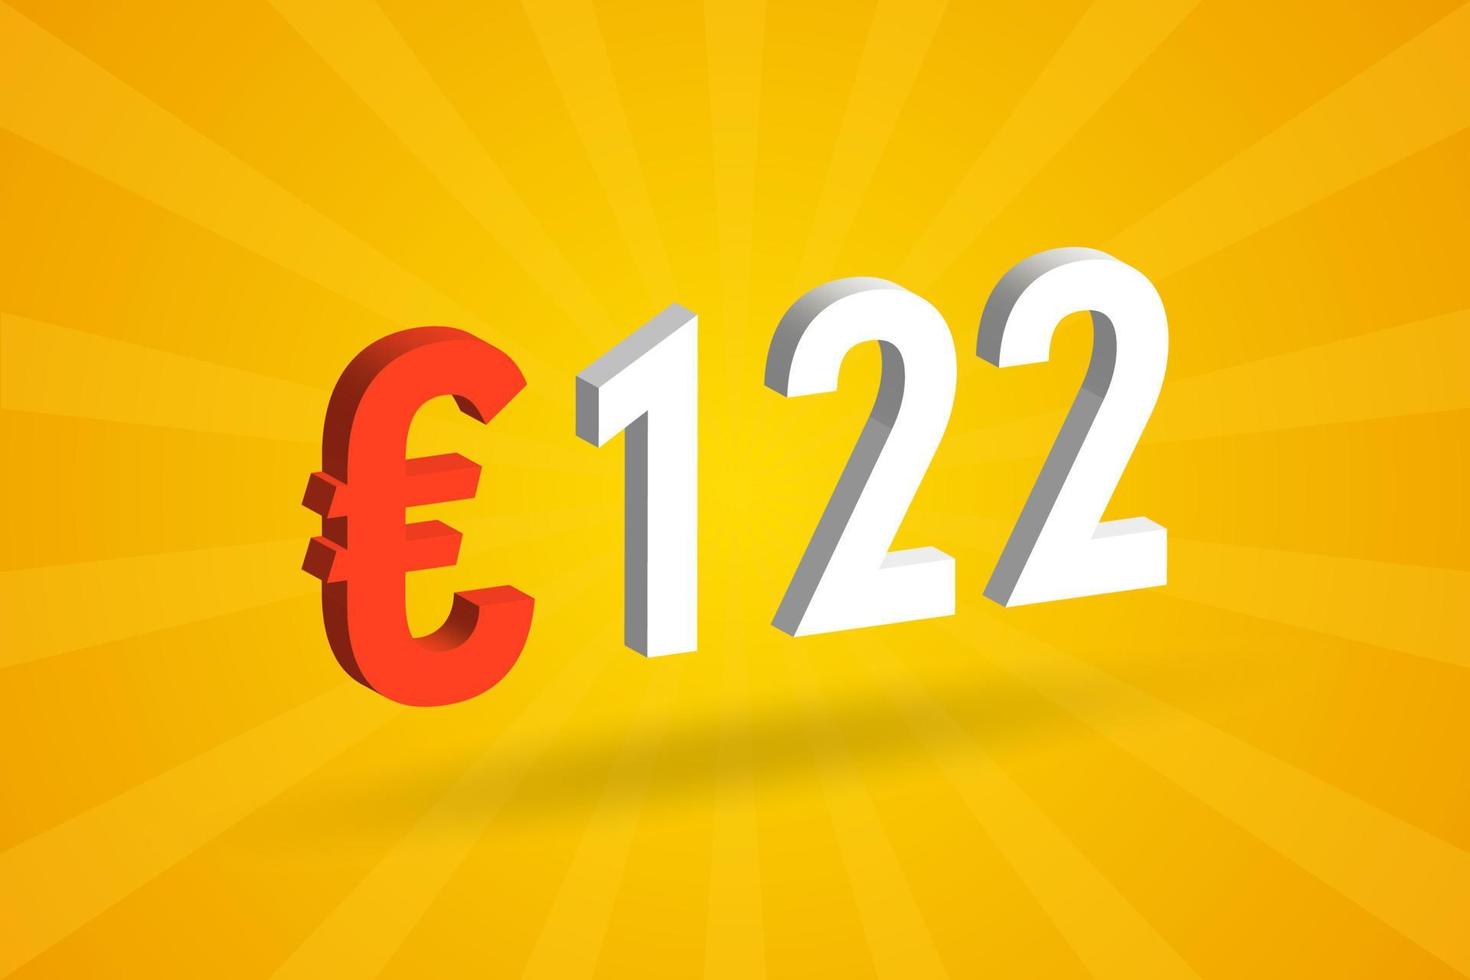 símbolo de texto de vetor 3d de moeda de 122 euros. vetor de estoque de dinheiro da união europeia de 122 euros 3d